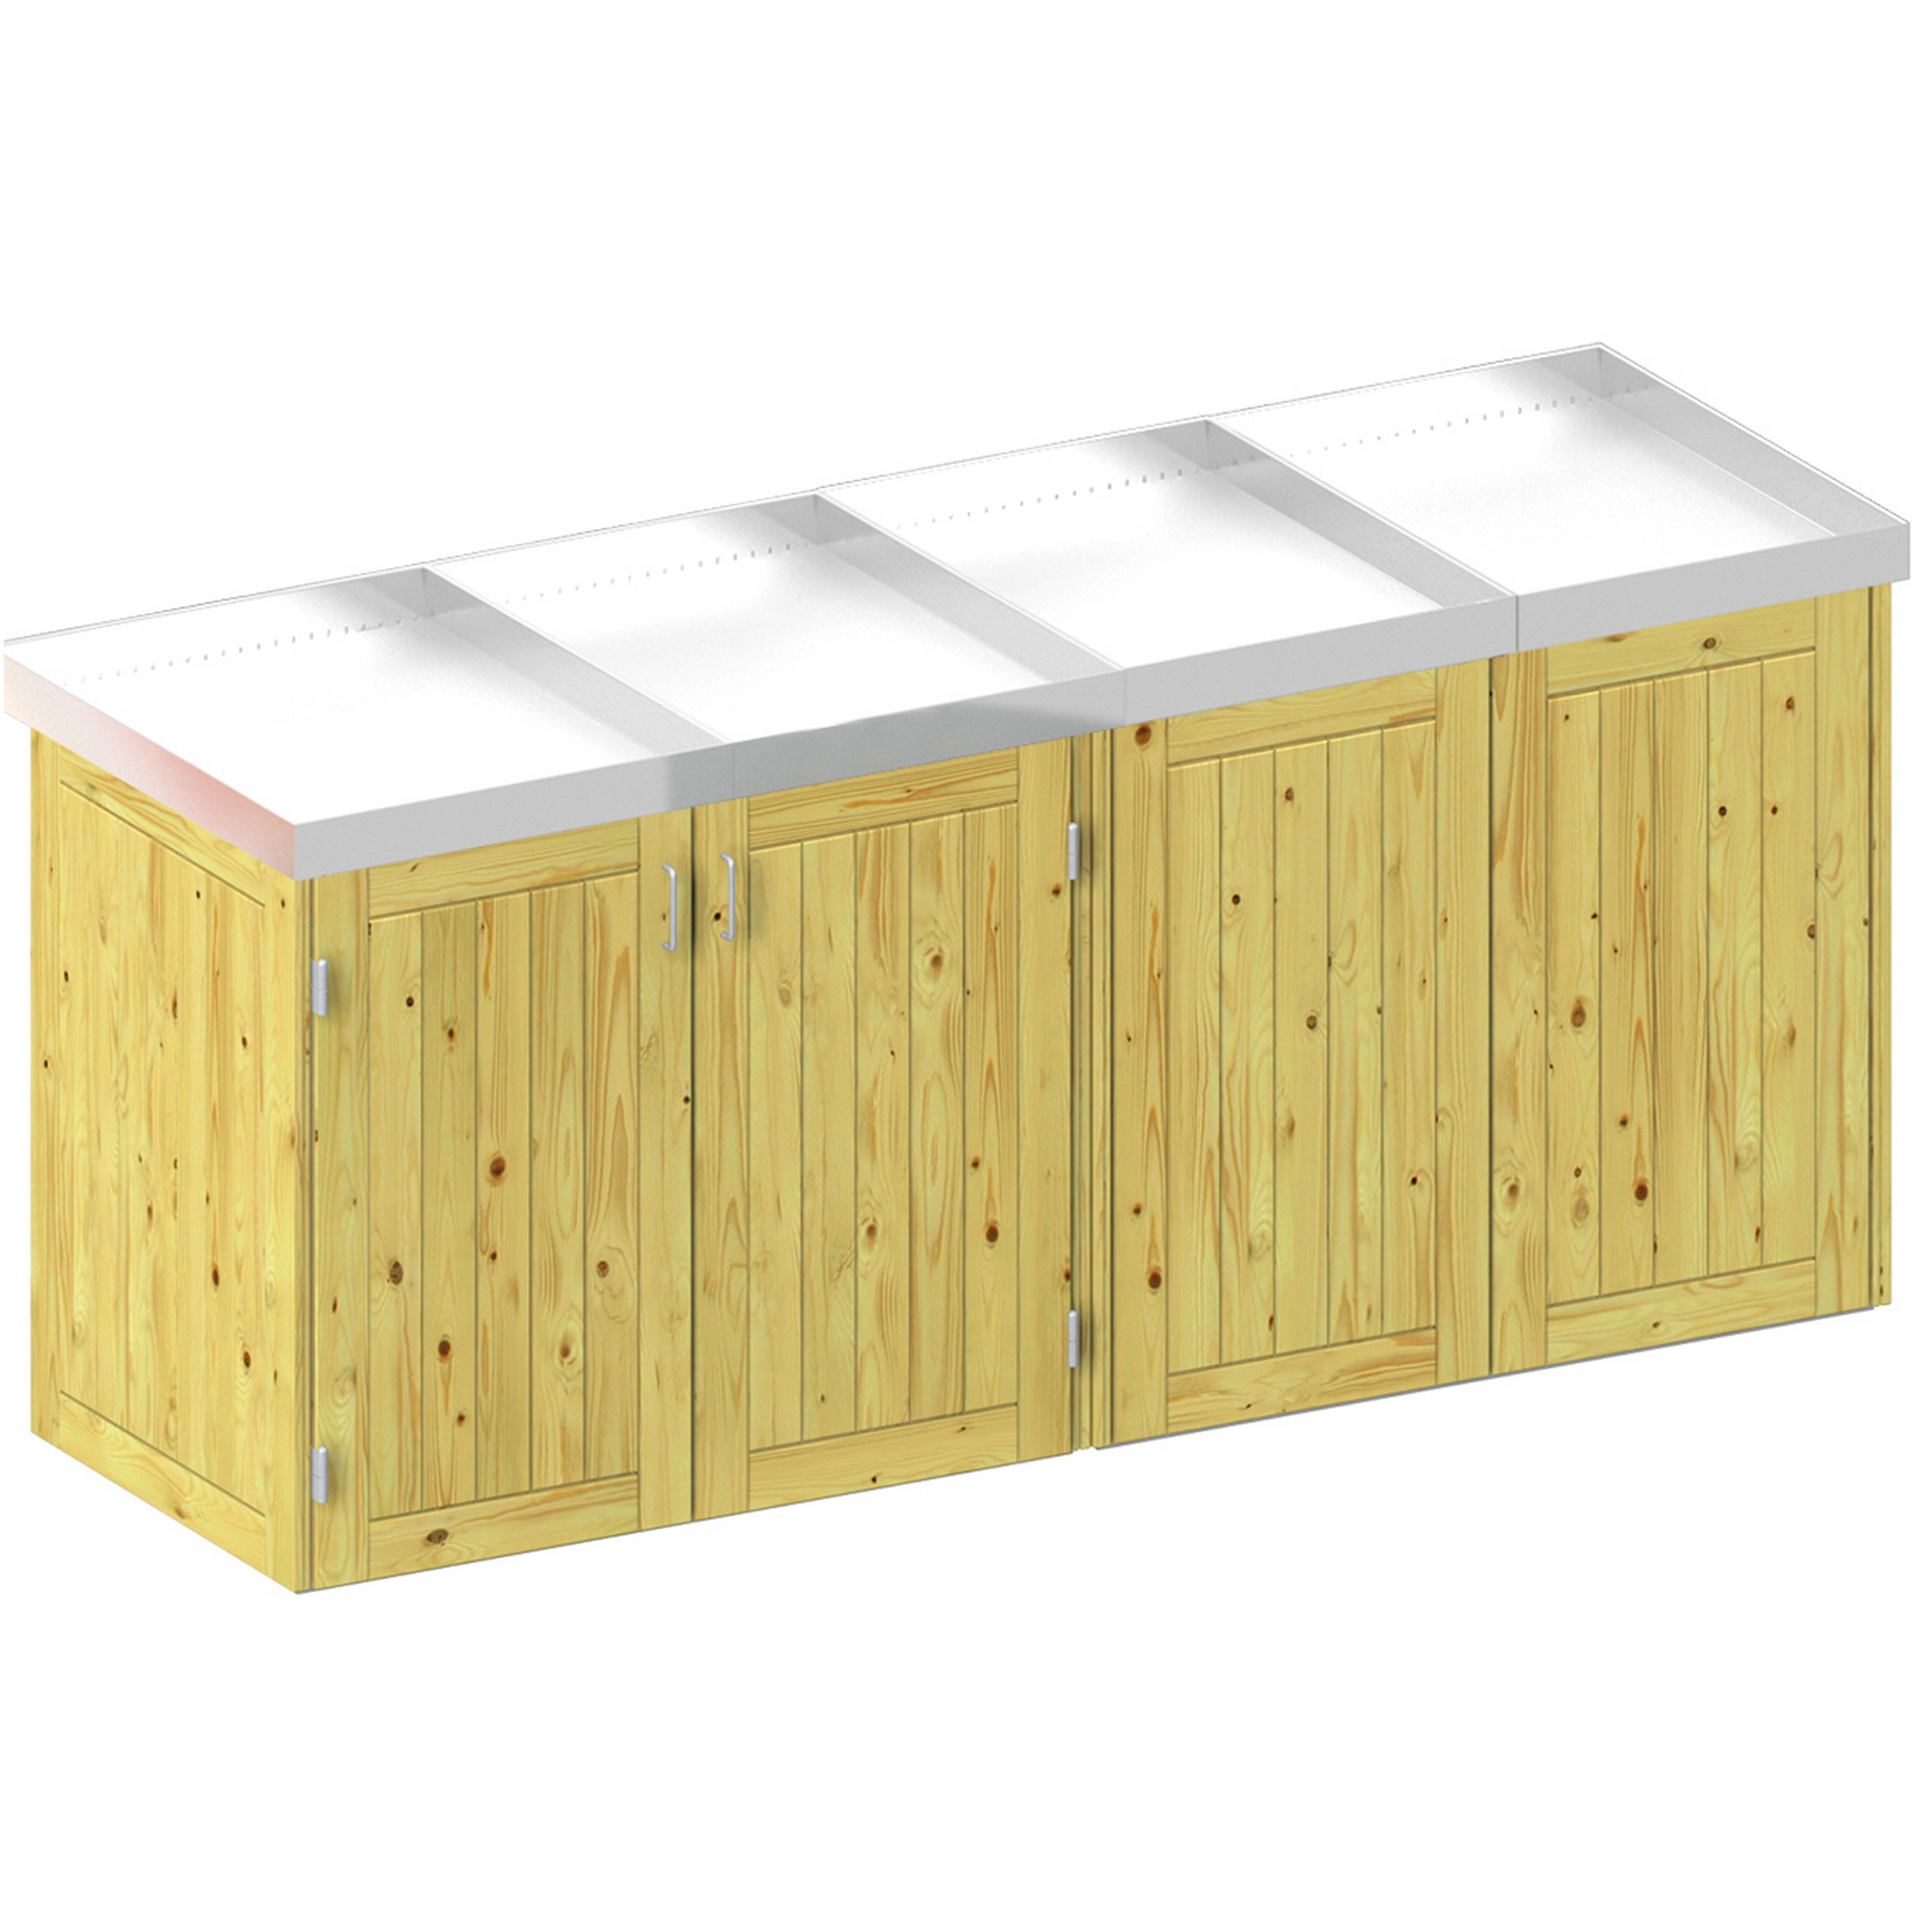 Mülltonnenbox 'Binto' mit Pflanzkasten naturfarben 282 x 129 x 90 cm + product picture